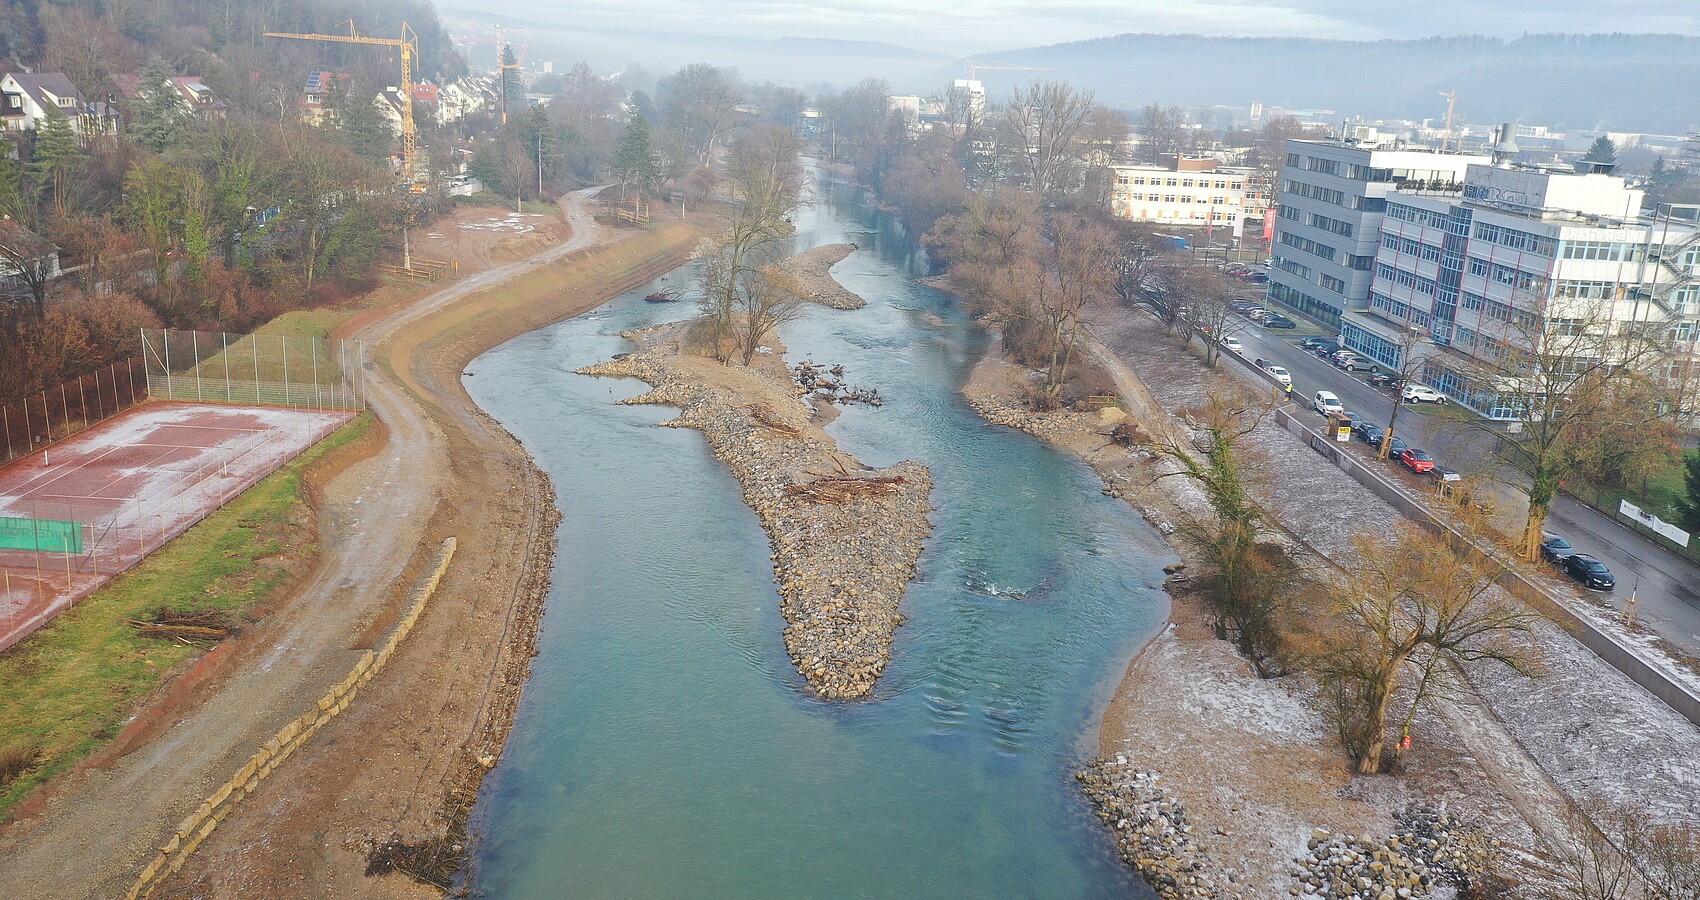 Blick im Januar von oben auf die Baustelle des Flussparks Neckaraue - im Mittelpunkt ist eine Kiesinsel im blauen Neckar zu sehen 